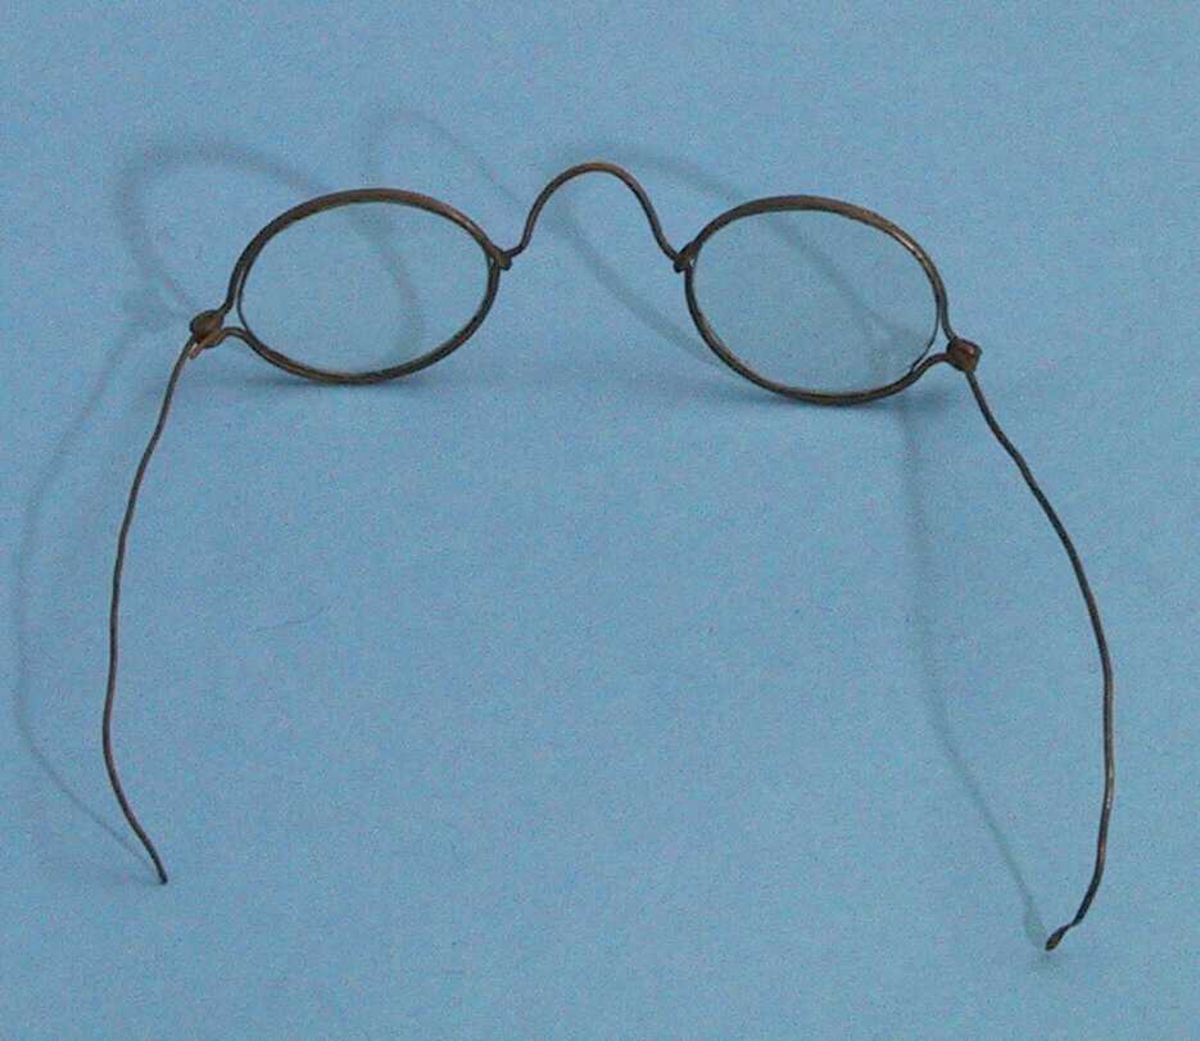 Enkle briller, brilleglassene er små, omfatningen er laget av ståltrådliknende materiale og lett bøyelig.